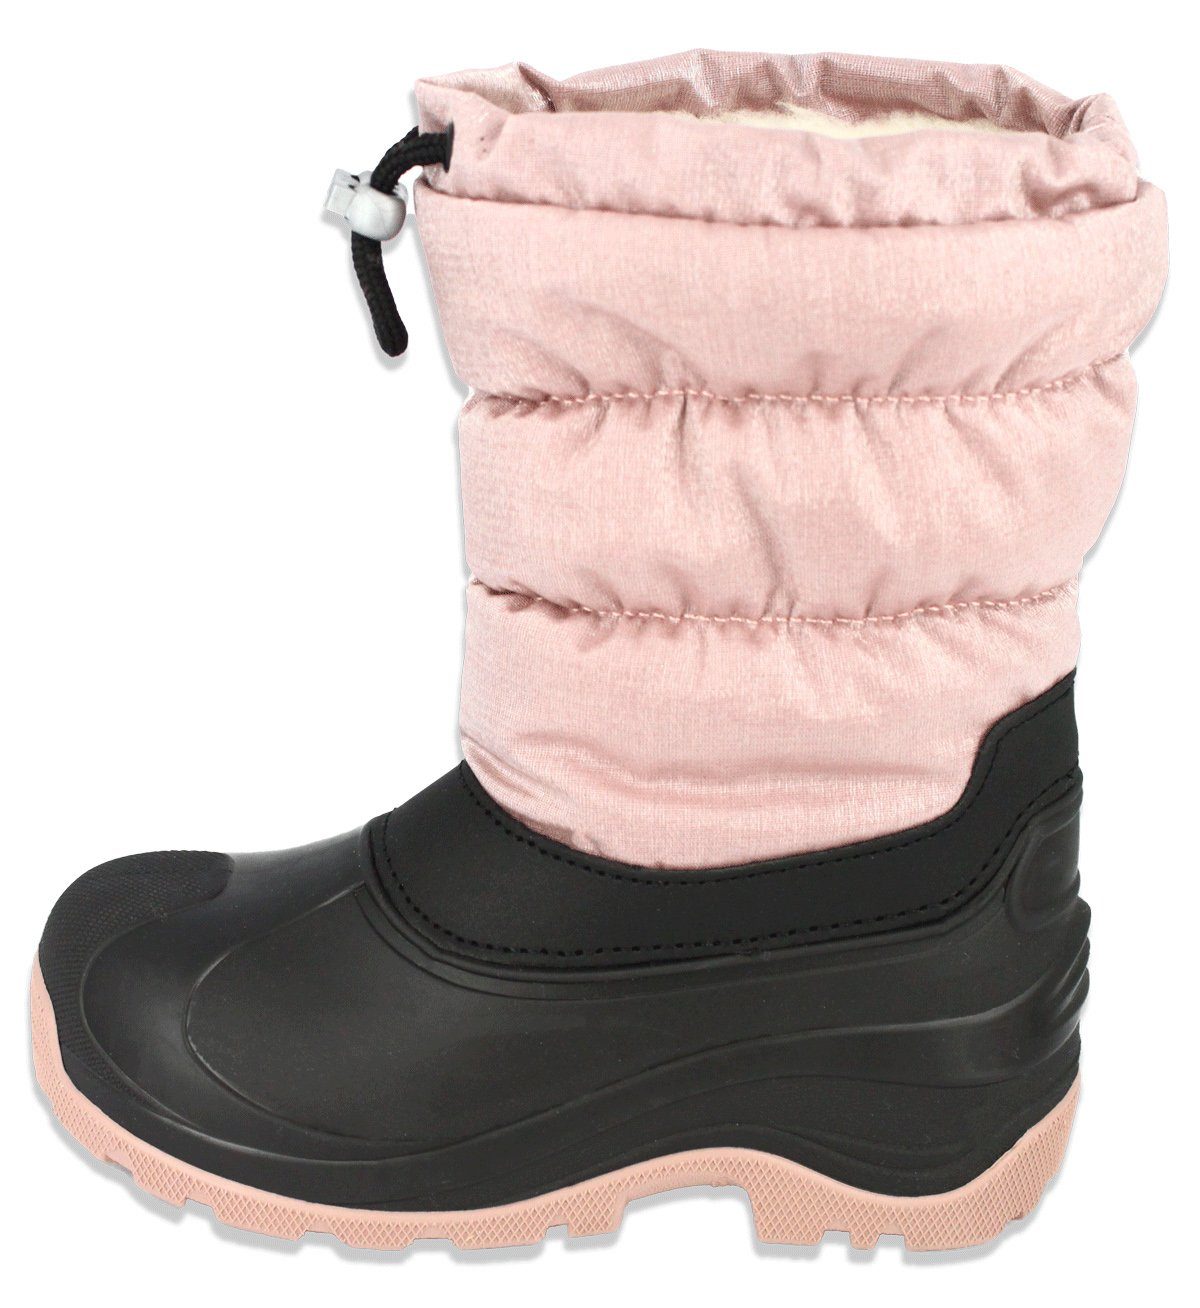 Beck Snowboots in beige oder rosa, für Jungen und Mädchen, Winterstiefel (sehr warmes, flauschiges Futter, für warme Füße bei Kälte und Schnee) rutschfeste Laufsohle